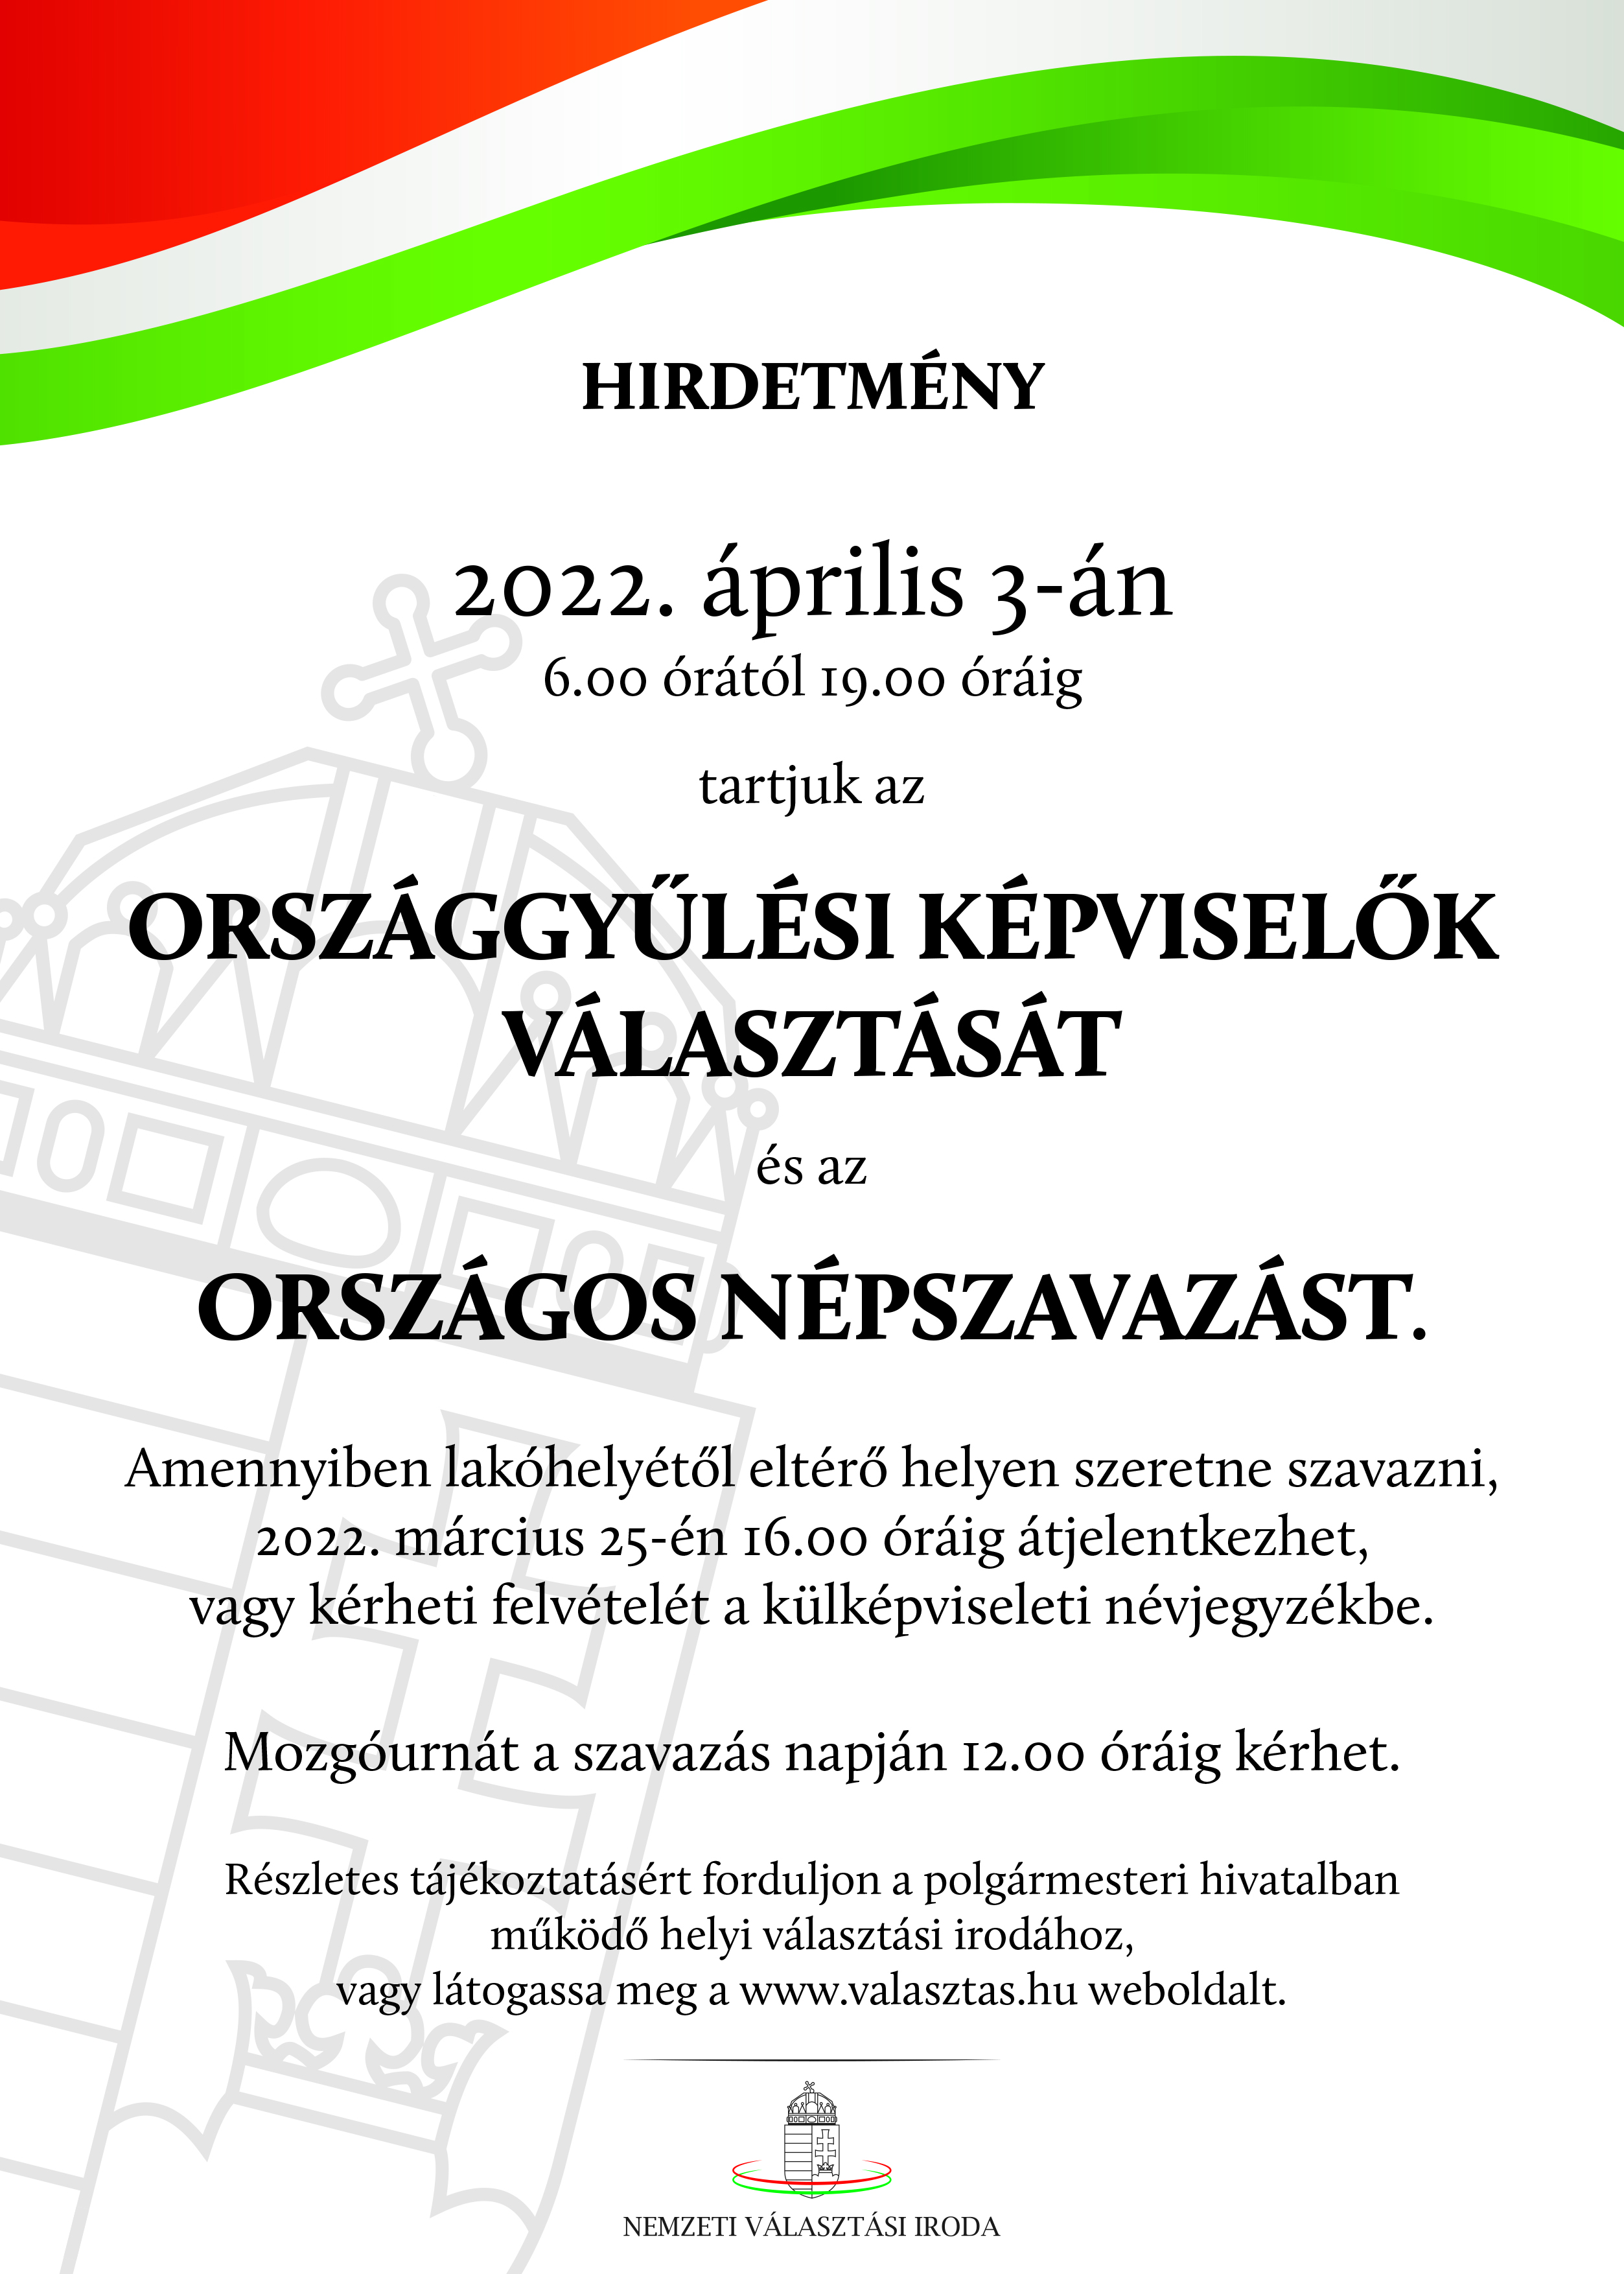 Országgyűlési Képviselők Választása és Népszavazás 2022. április 3.